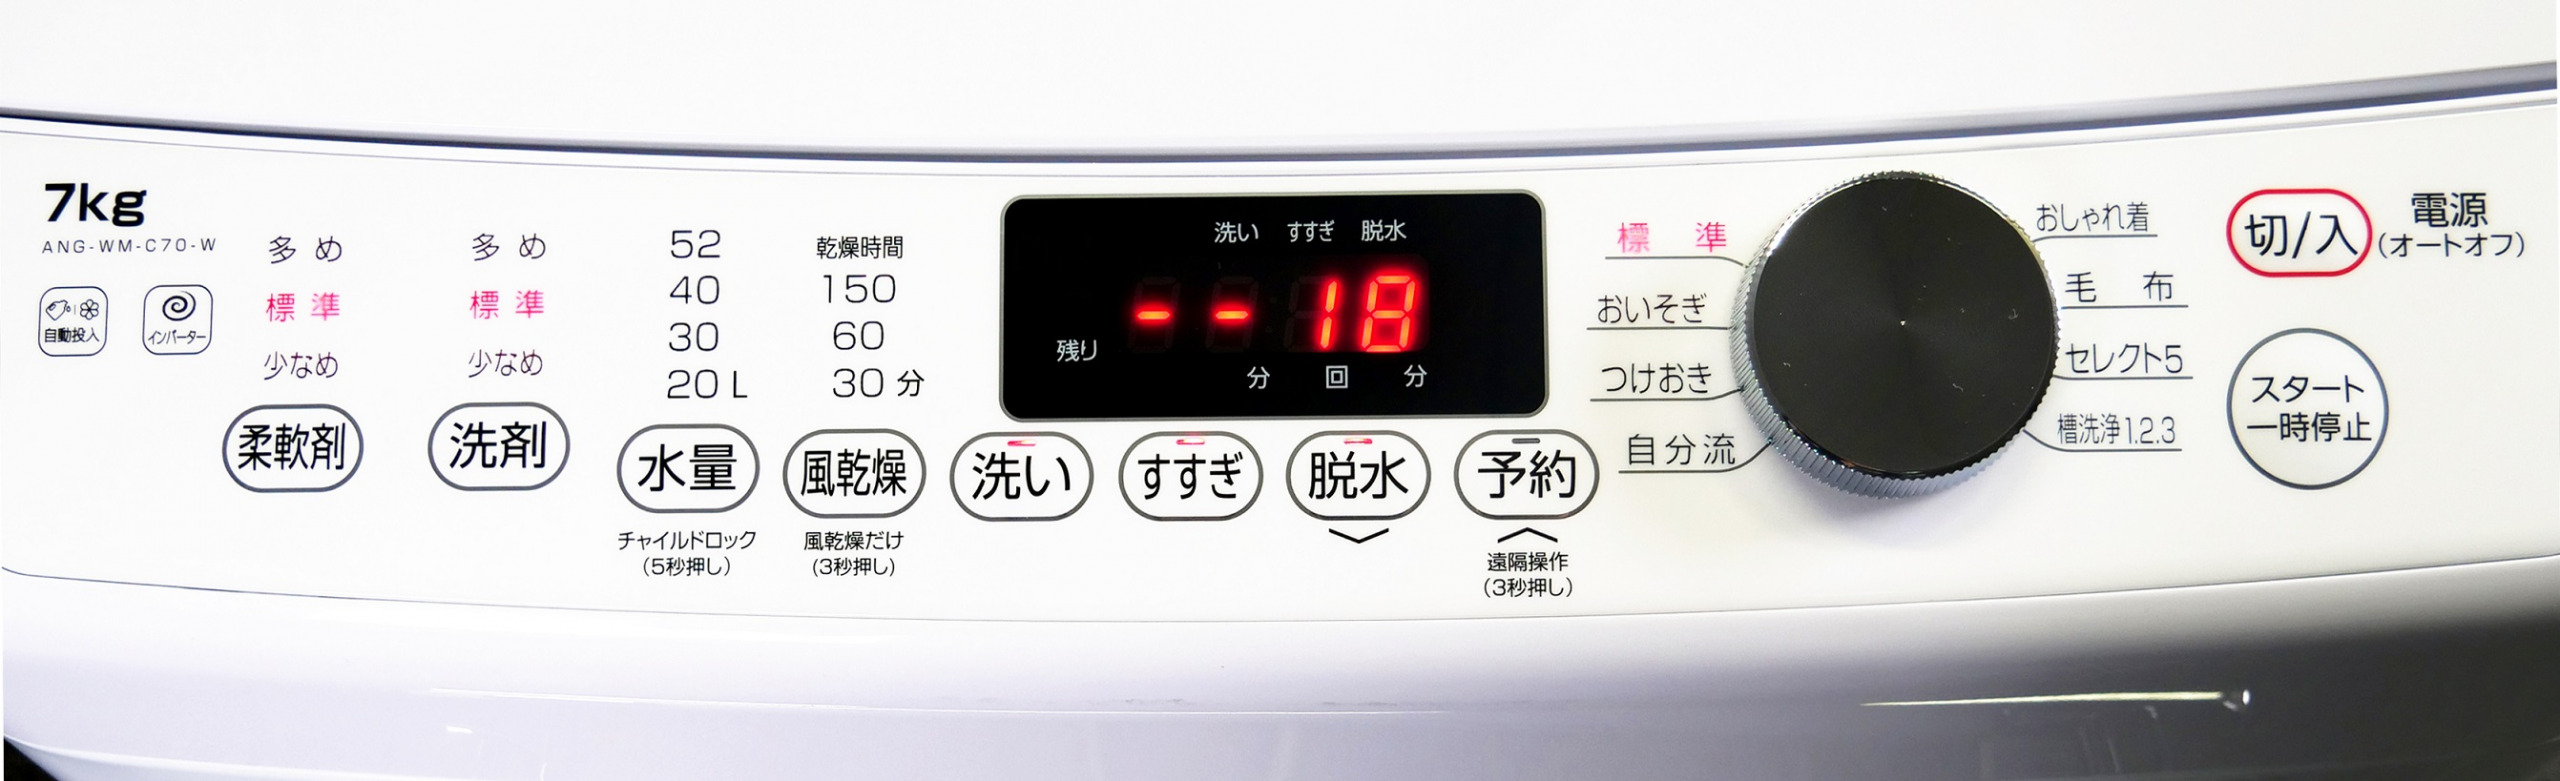 エディオンのPB「e angle」にアプリで遠隔操作できる7kgの全自動洗濯機 ...